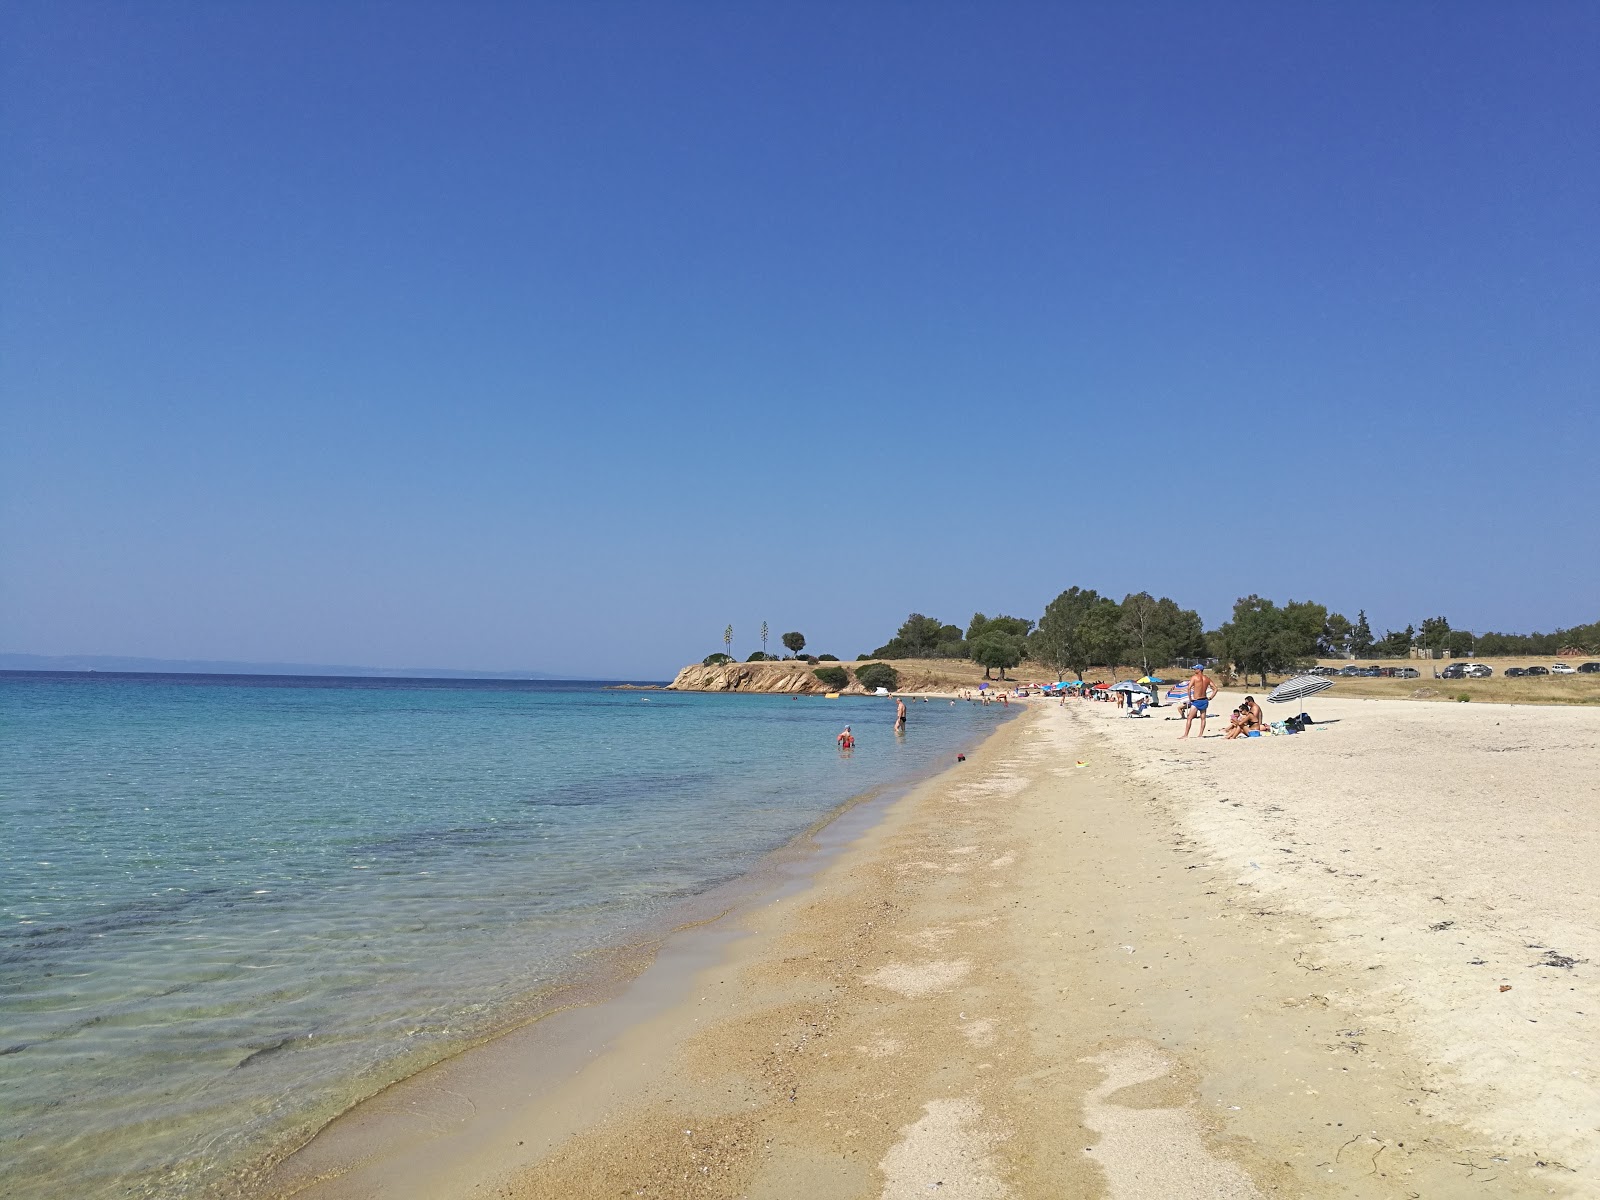 阿吉奥尼斯海滩的照片 带有蓝色纯水表面